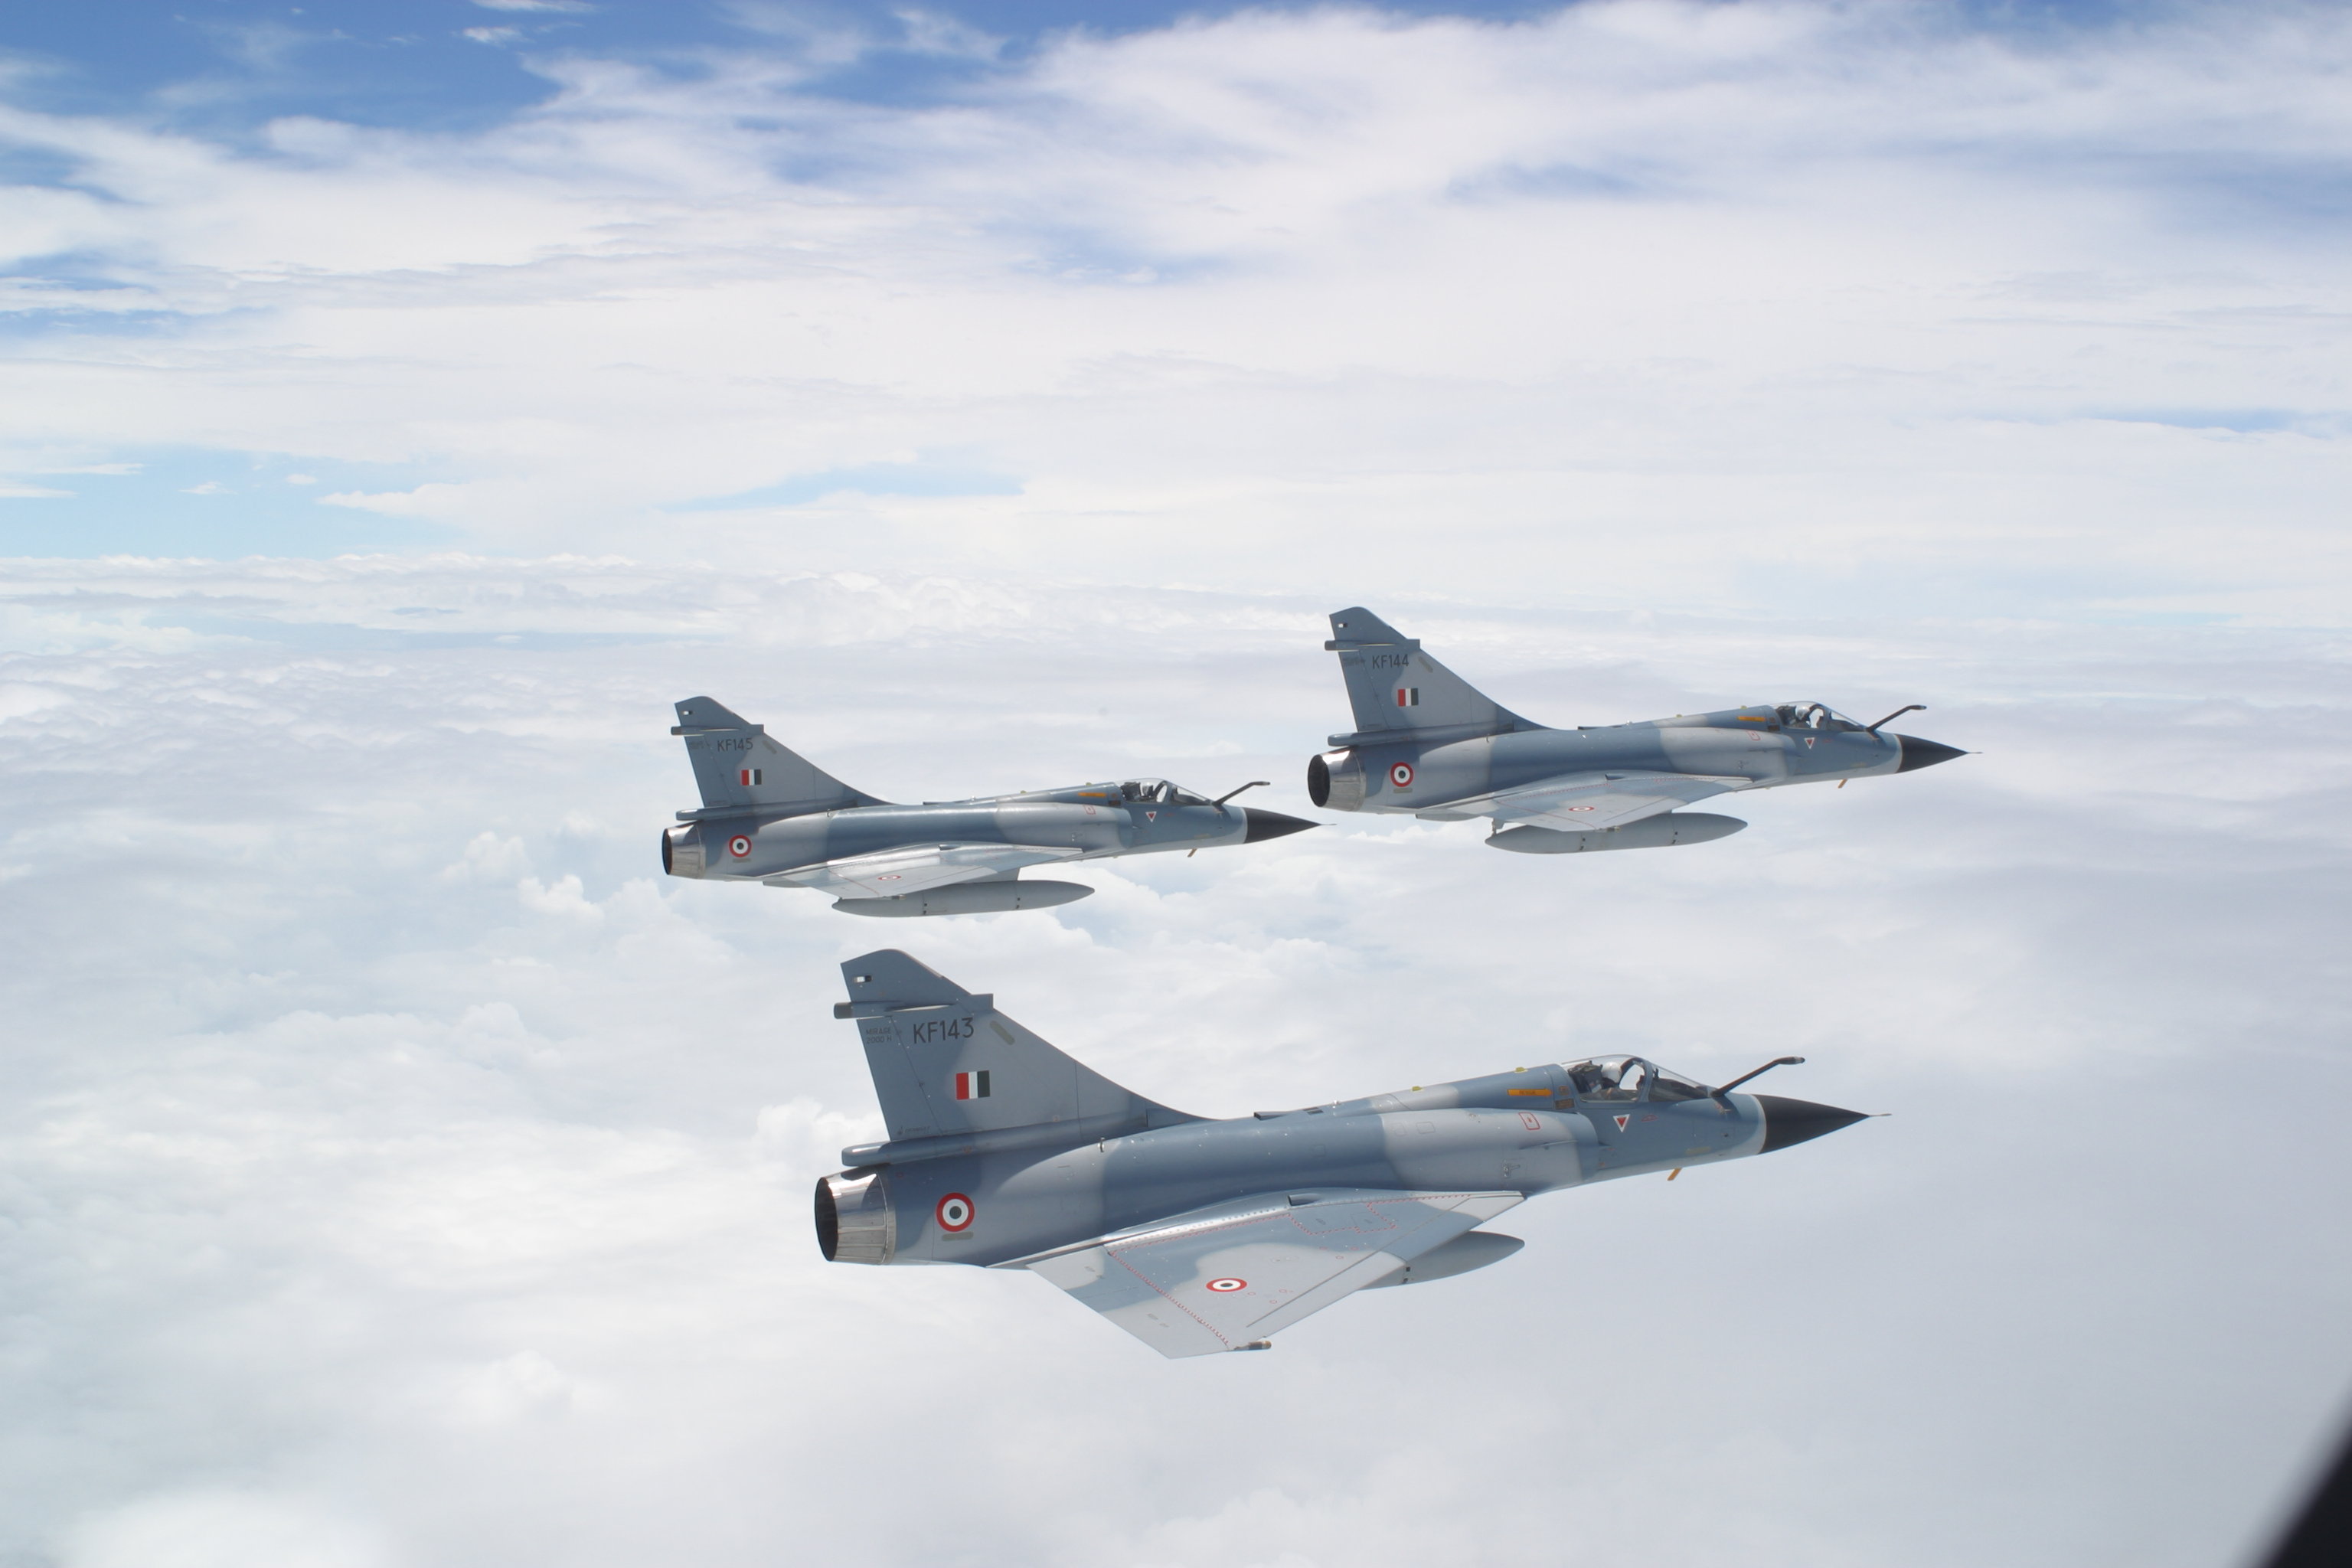 dassault mirage 2000, military, jet fighters